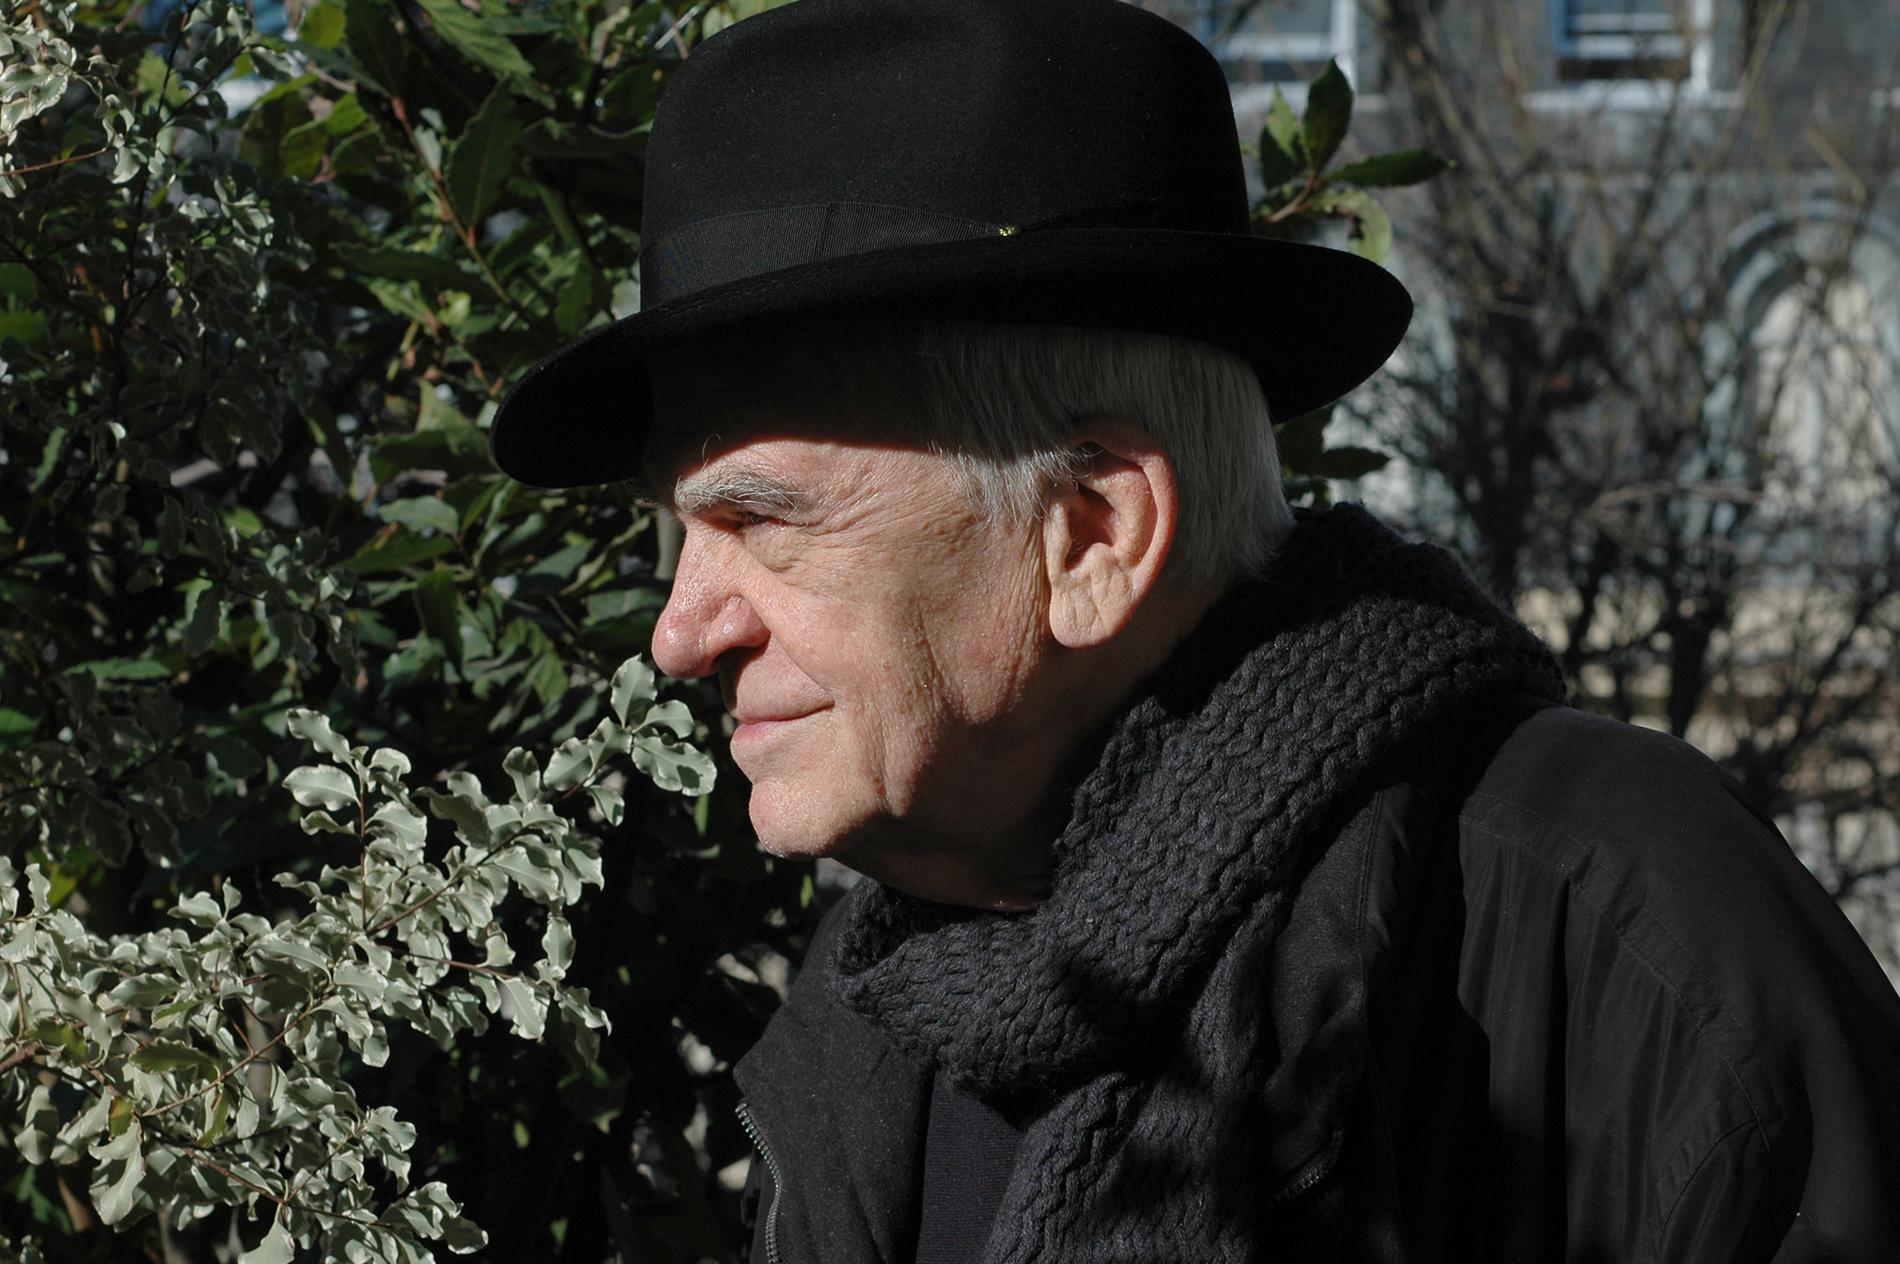 Milan Kundera, född 1929, blev fransk medborgare 1981 och är bosatt i Paris.